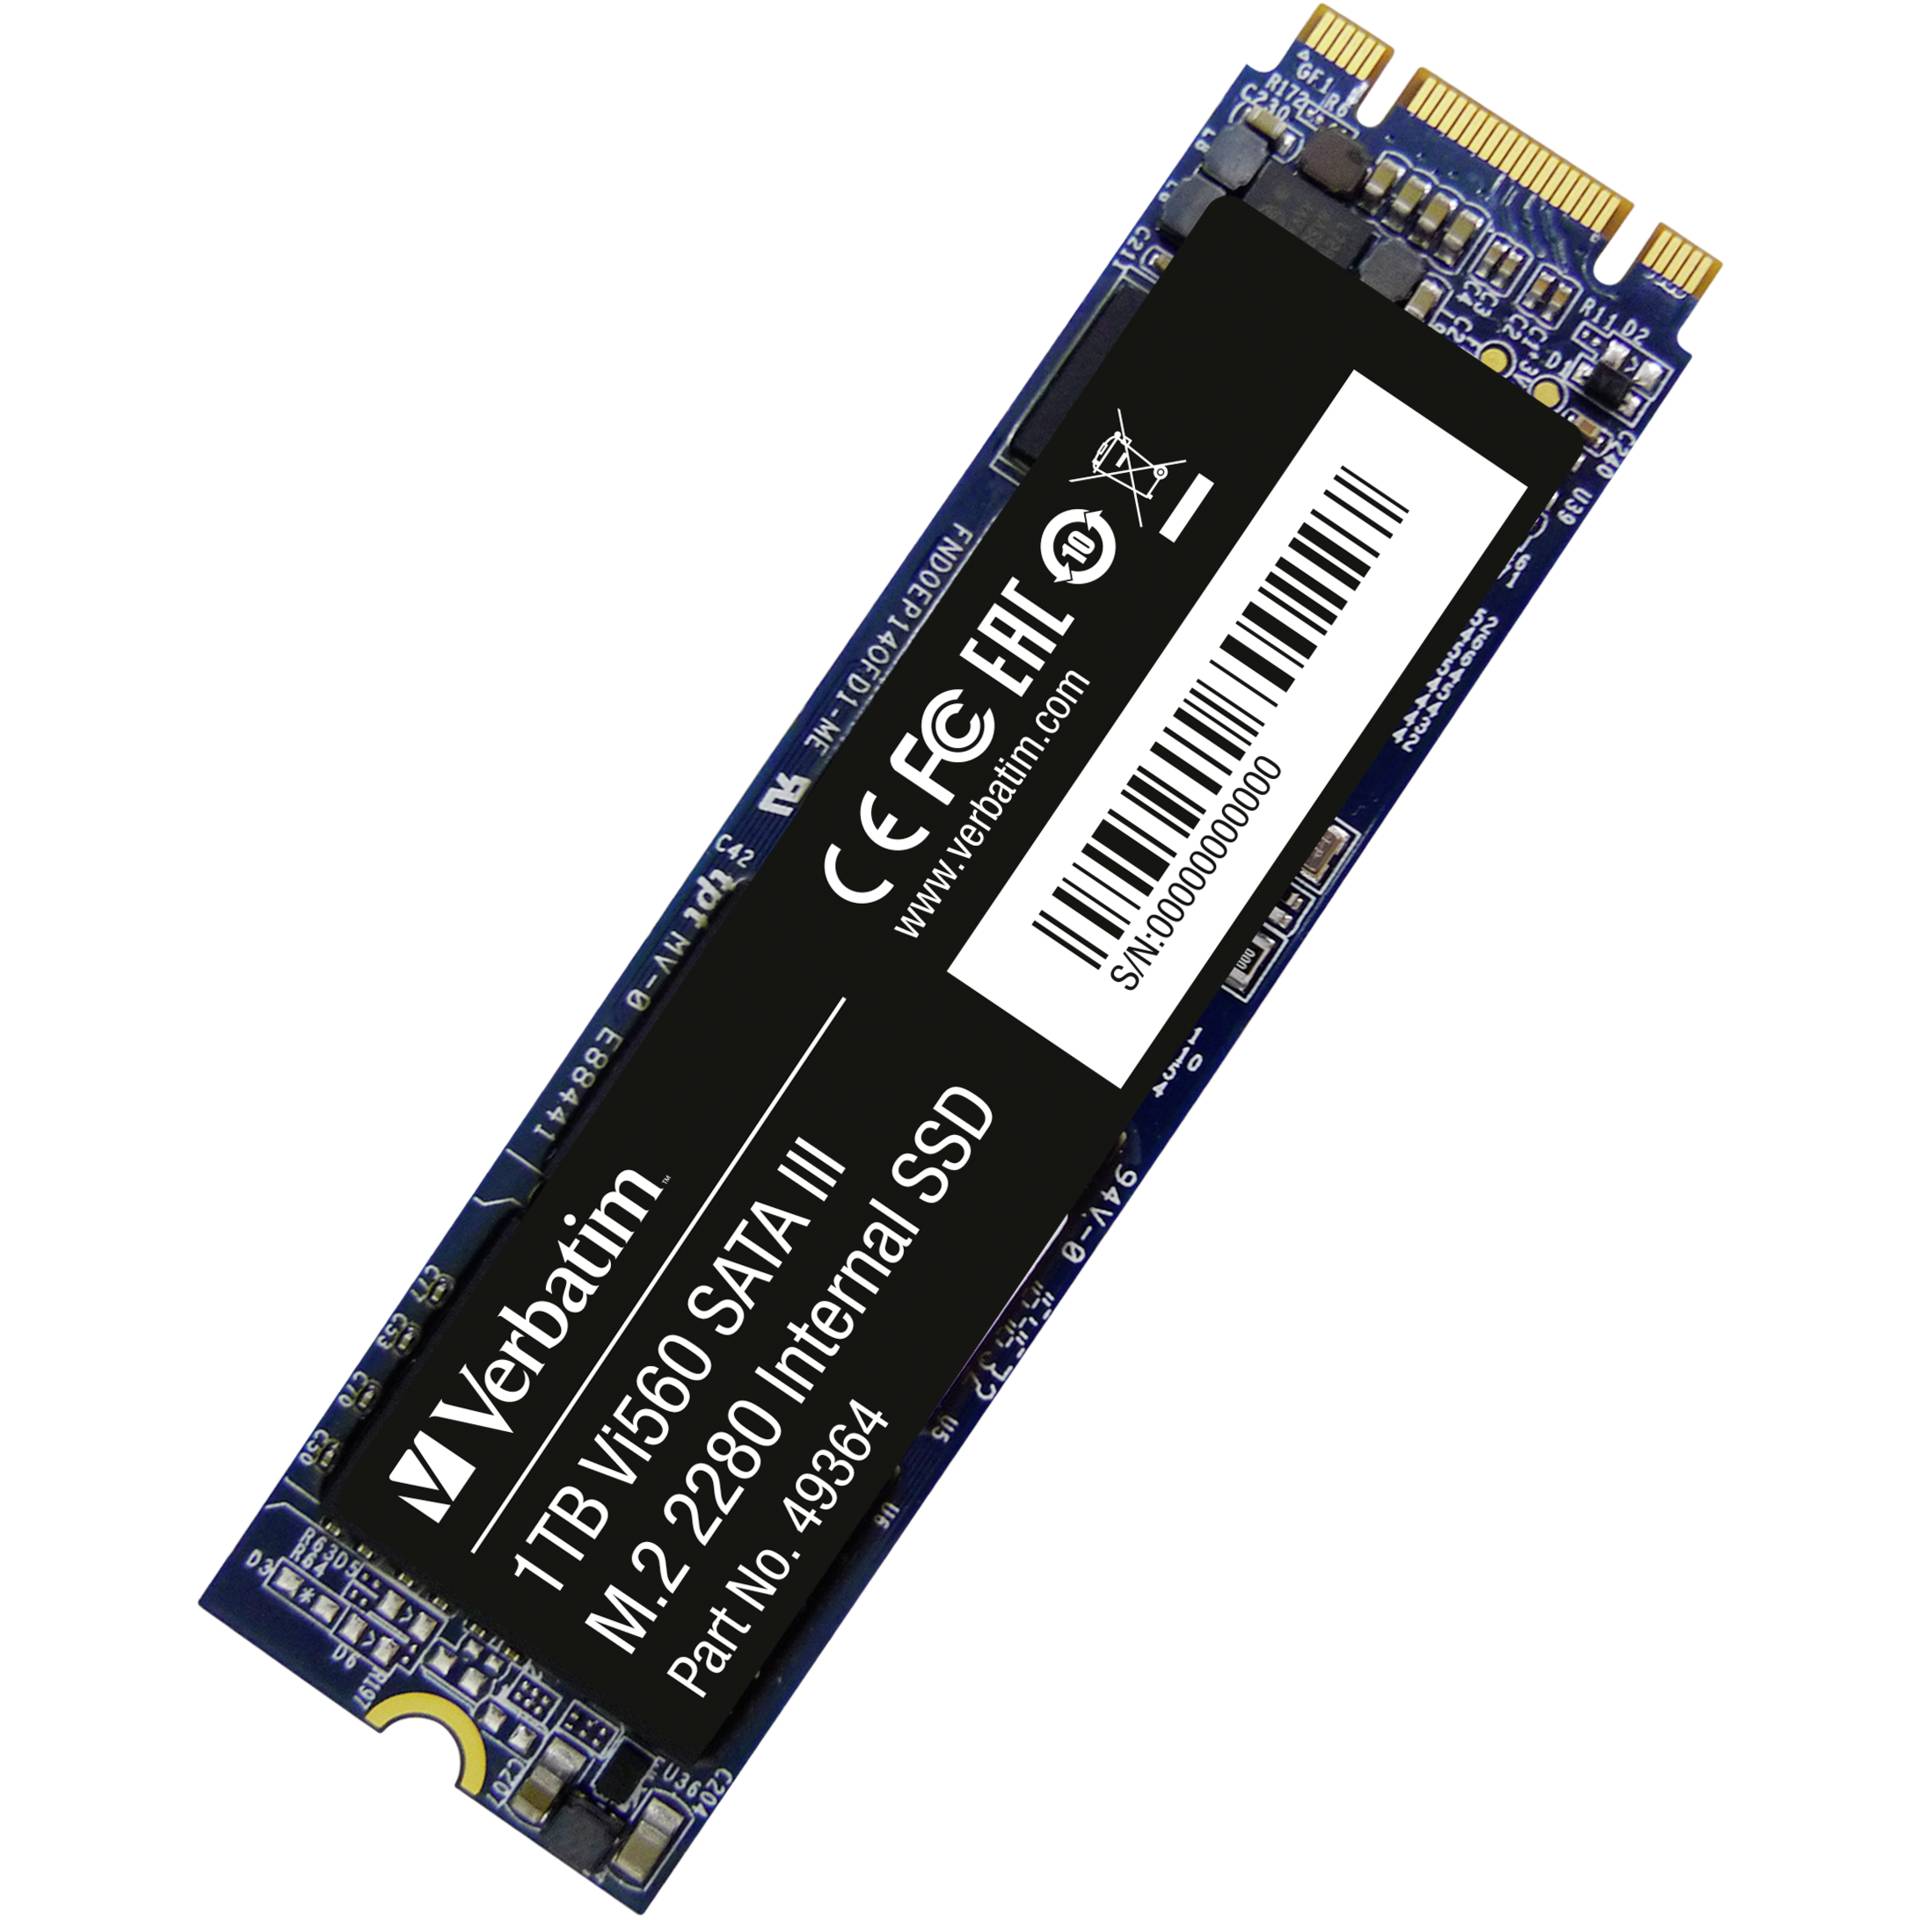 1.0 TB SSD Verbatim Vi560 S3 SSD, M.2/B-M-Key (SATA 6Gb/s), lesen: 560MB/s, schreiben: 520MB/s, TBW: 450TB